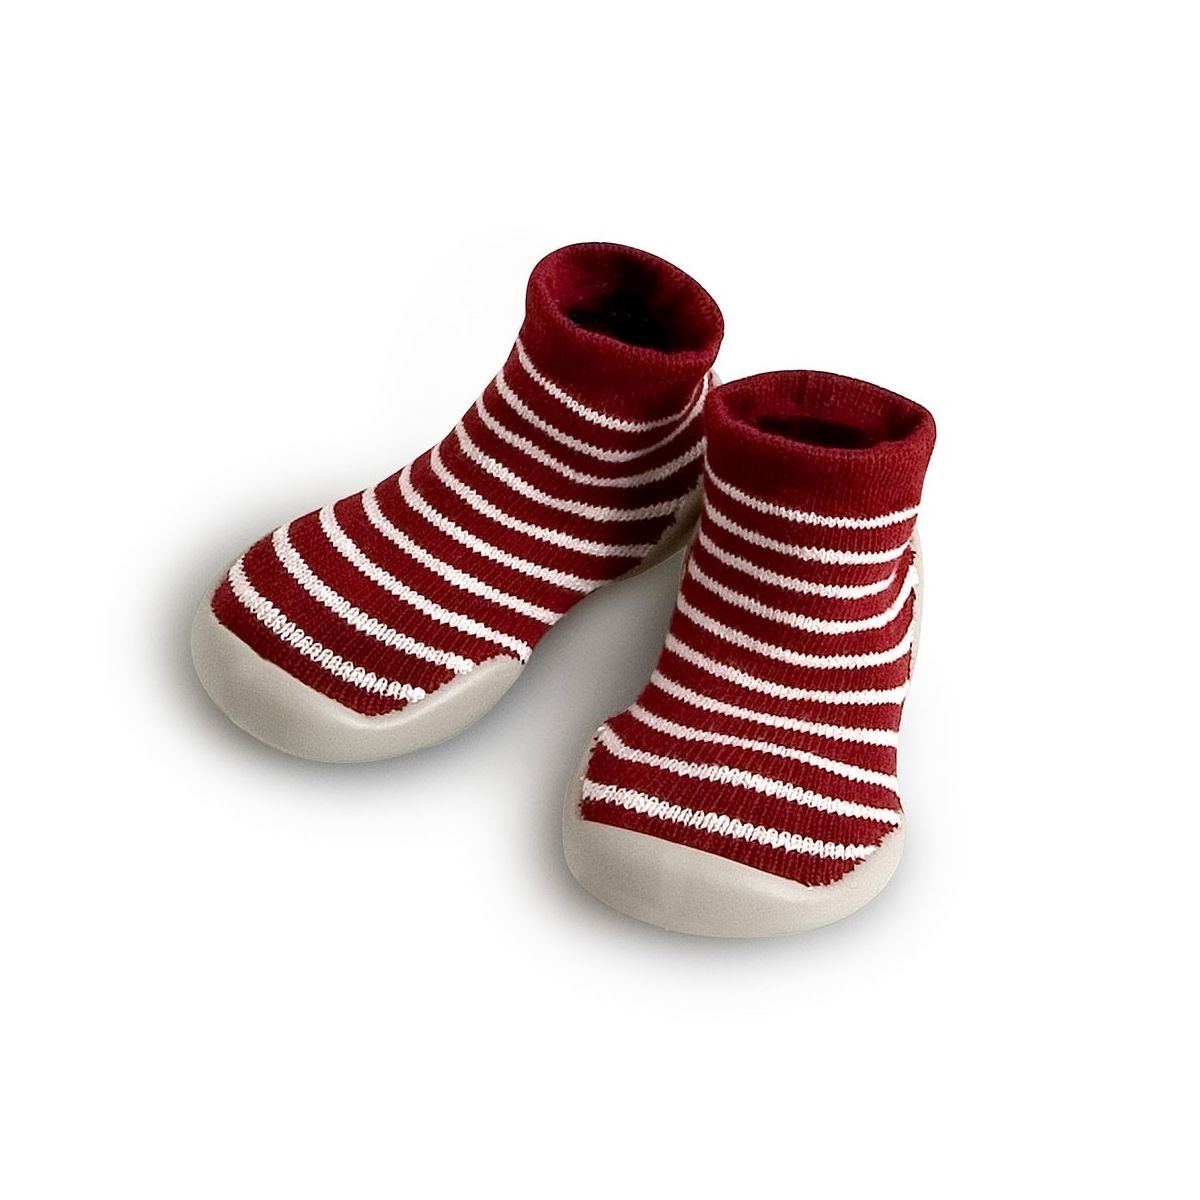 Collégien Slipper Socks Erable stripes marron white  